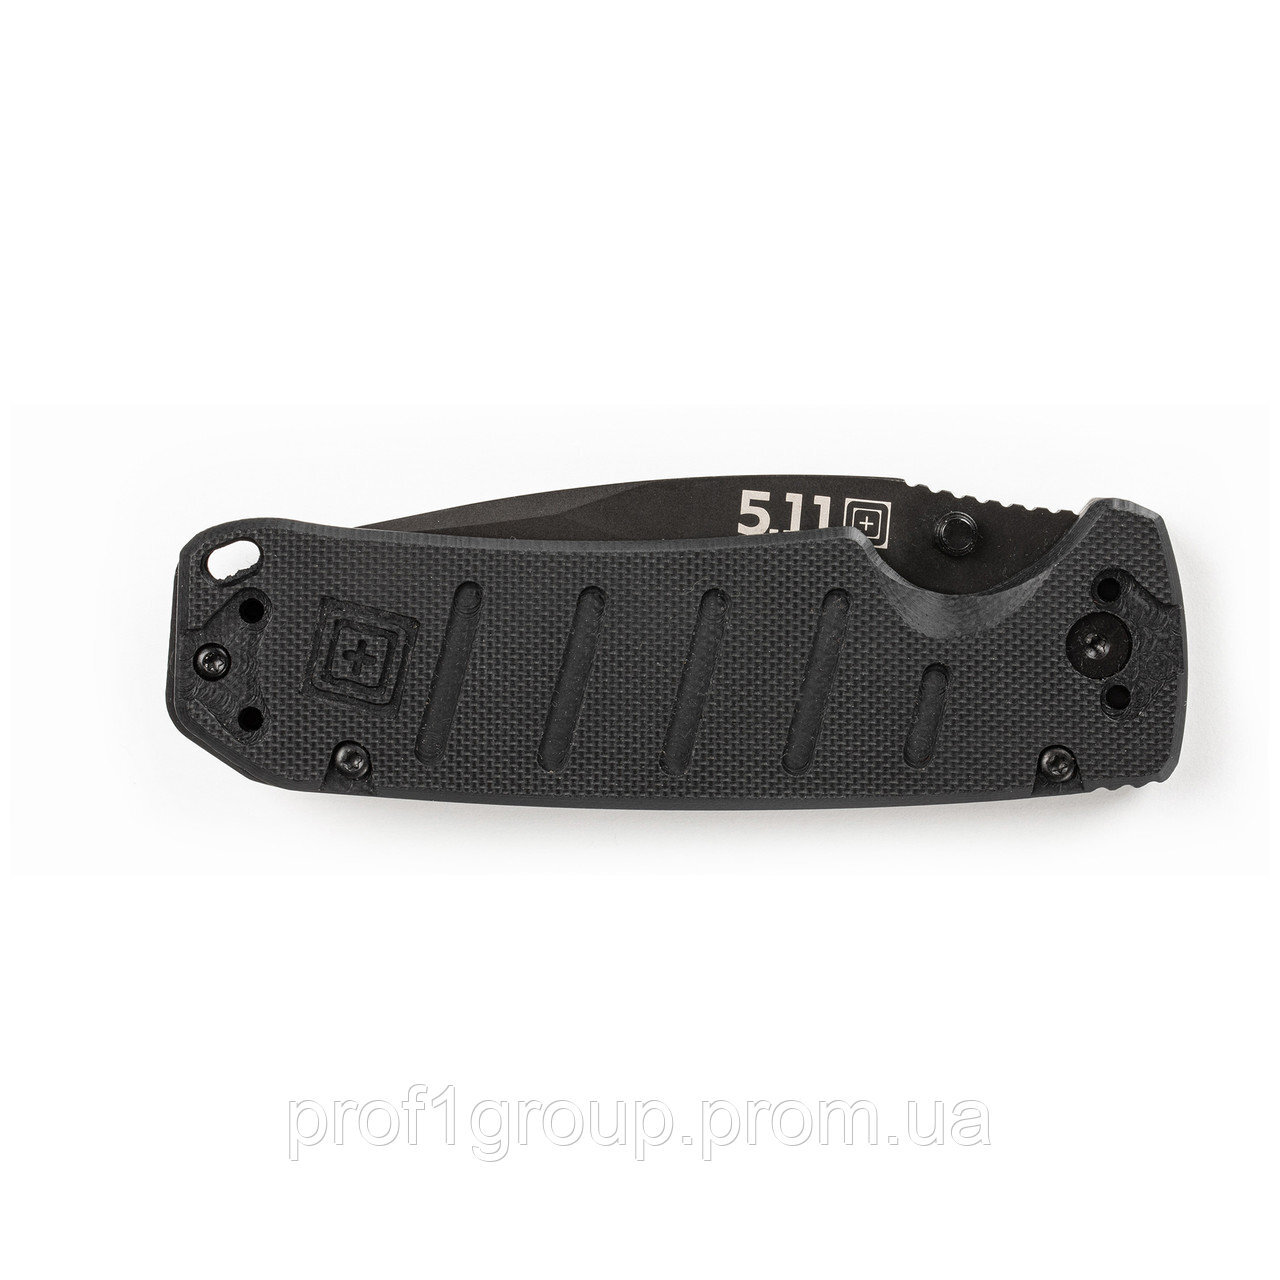 Складной нож Ryker DP mini, 5.11 Tactical - фото 2